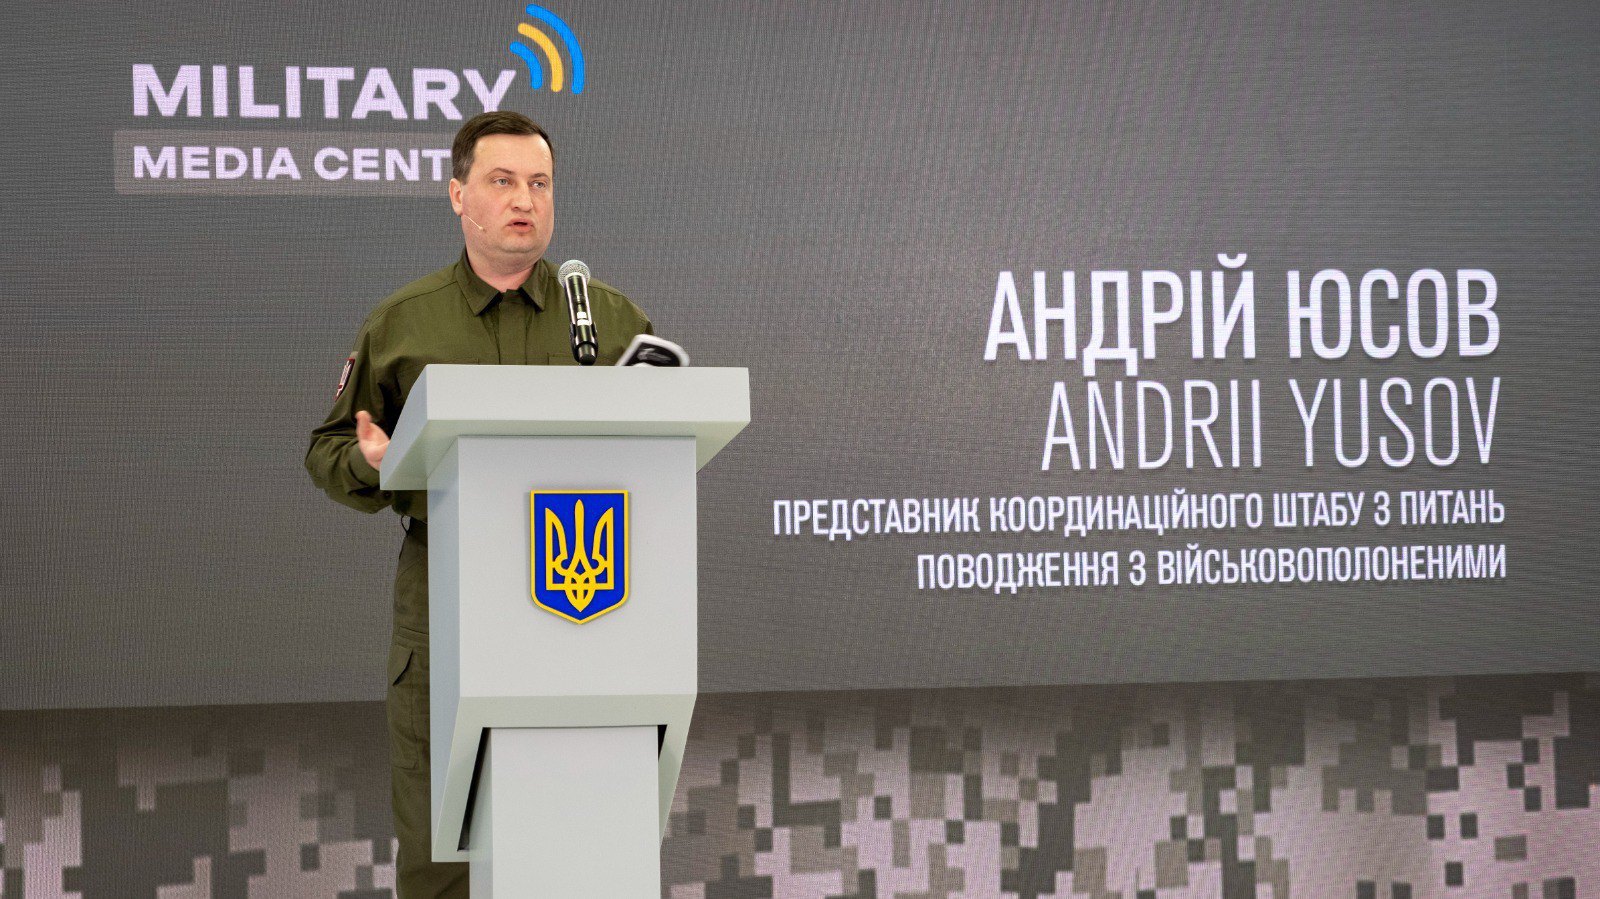 Представник Координаційного штабу з питань поводження з військовополоненими Андрій Юсов